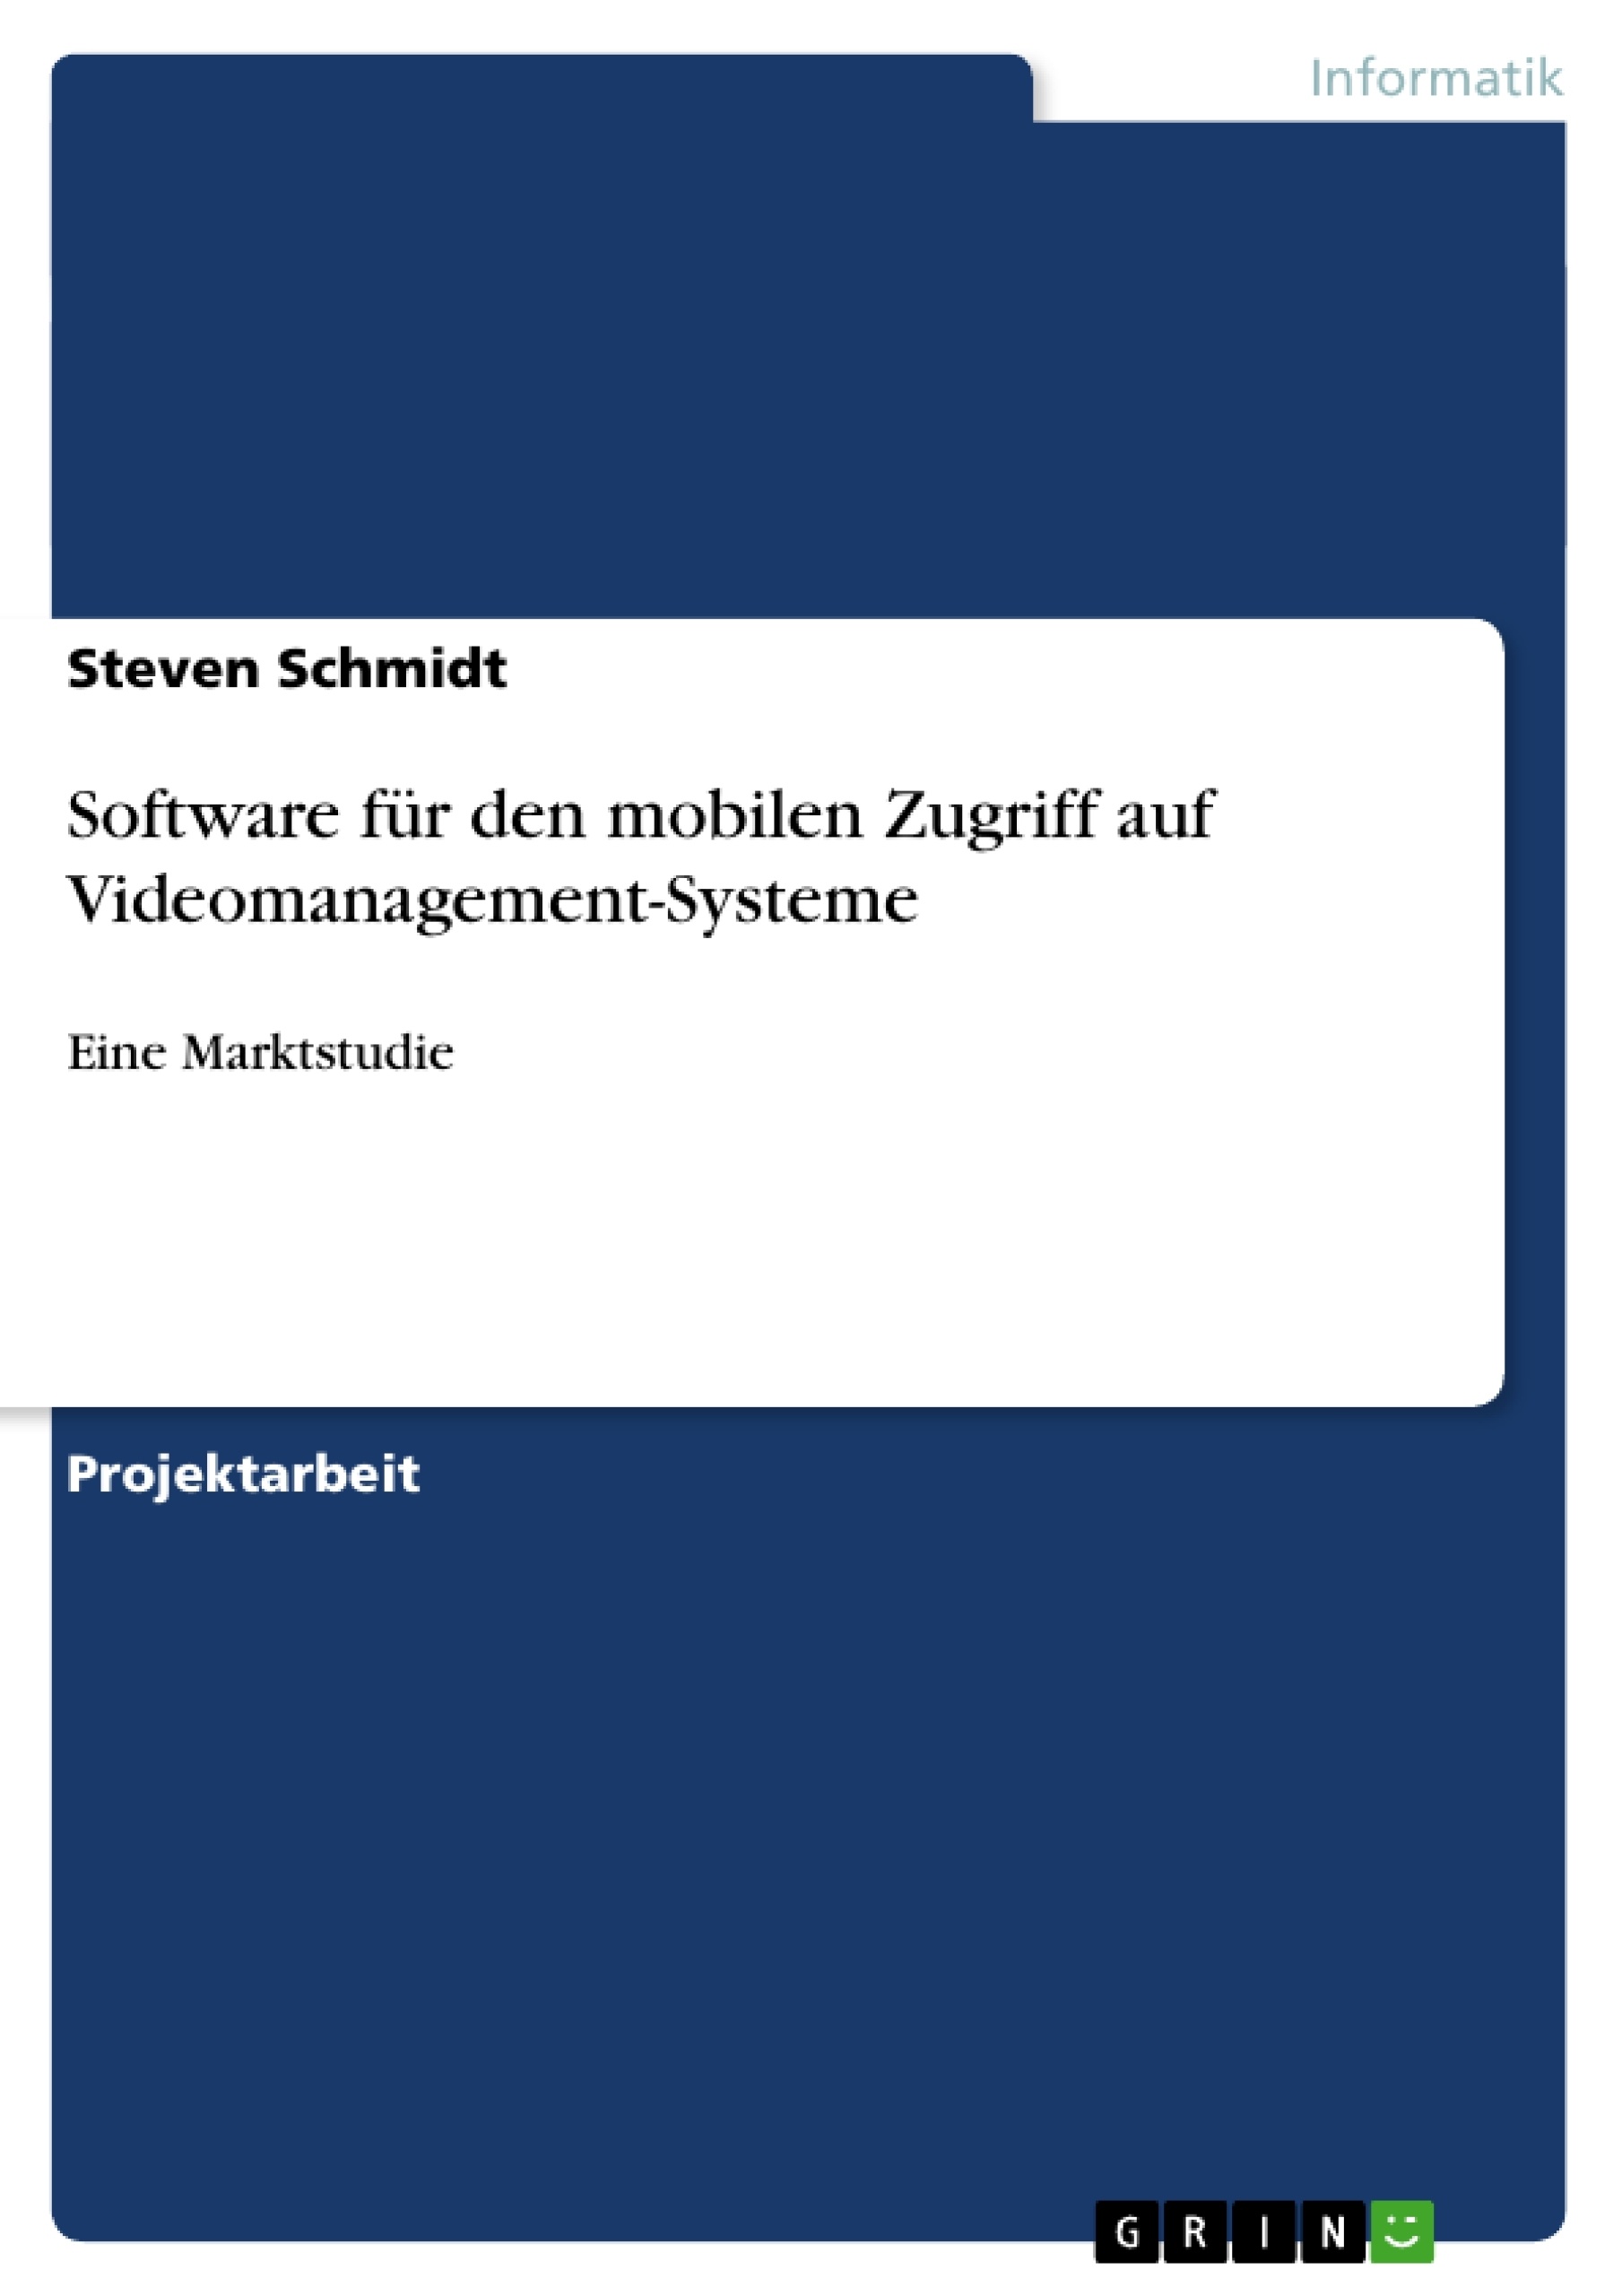 Title: Software für den mobilen Zugriff auf Videomanagement-Systeme